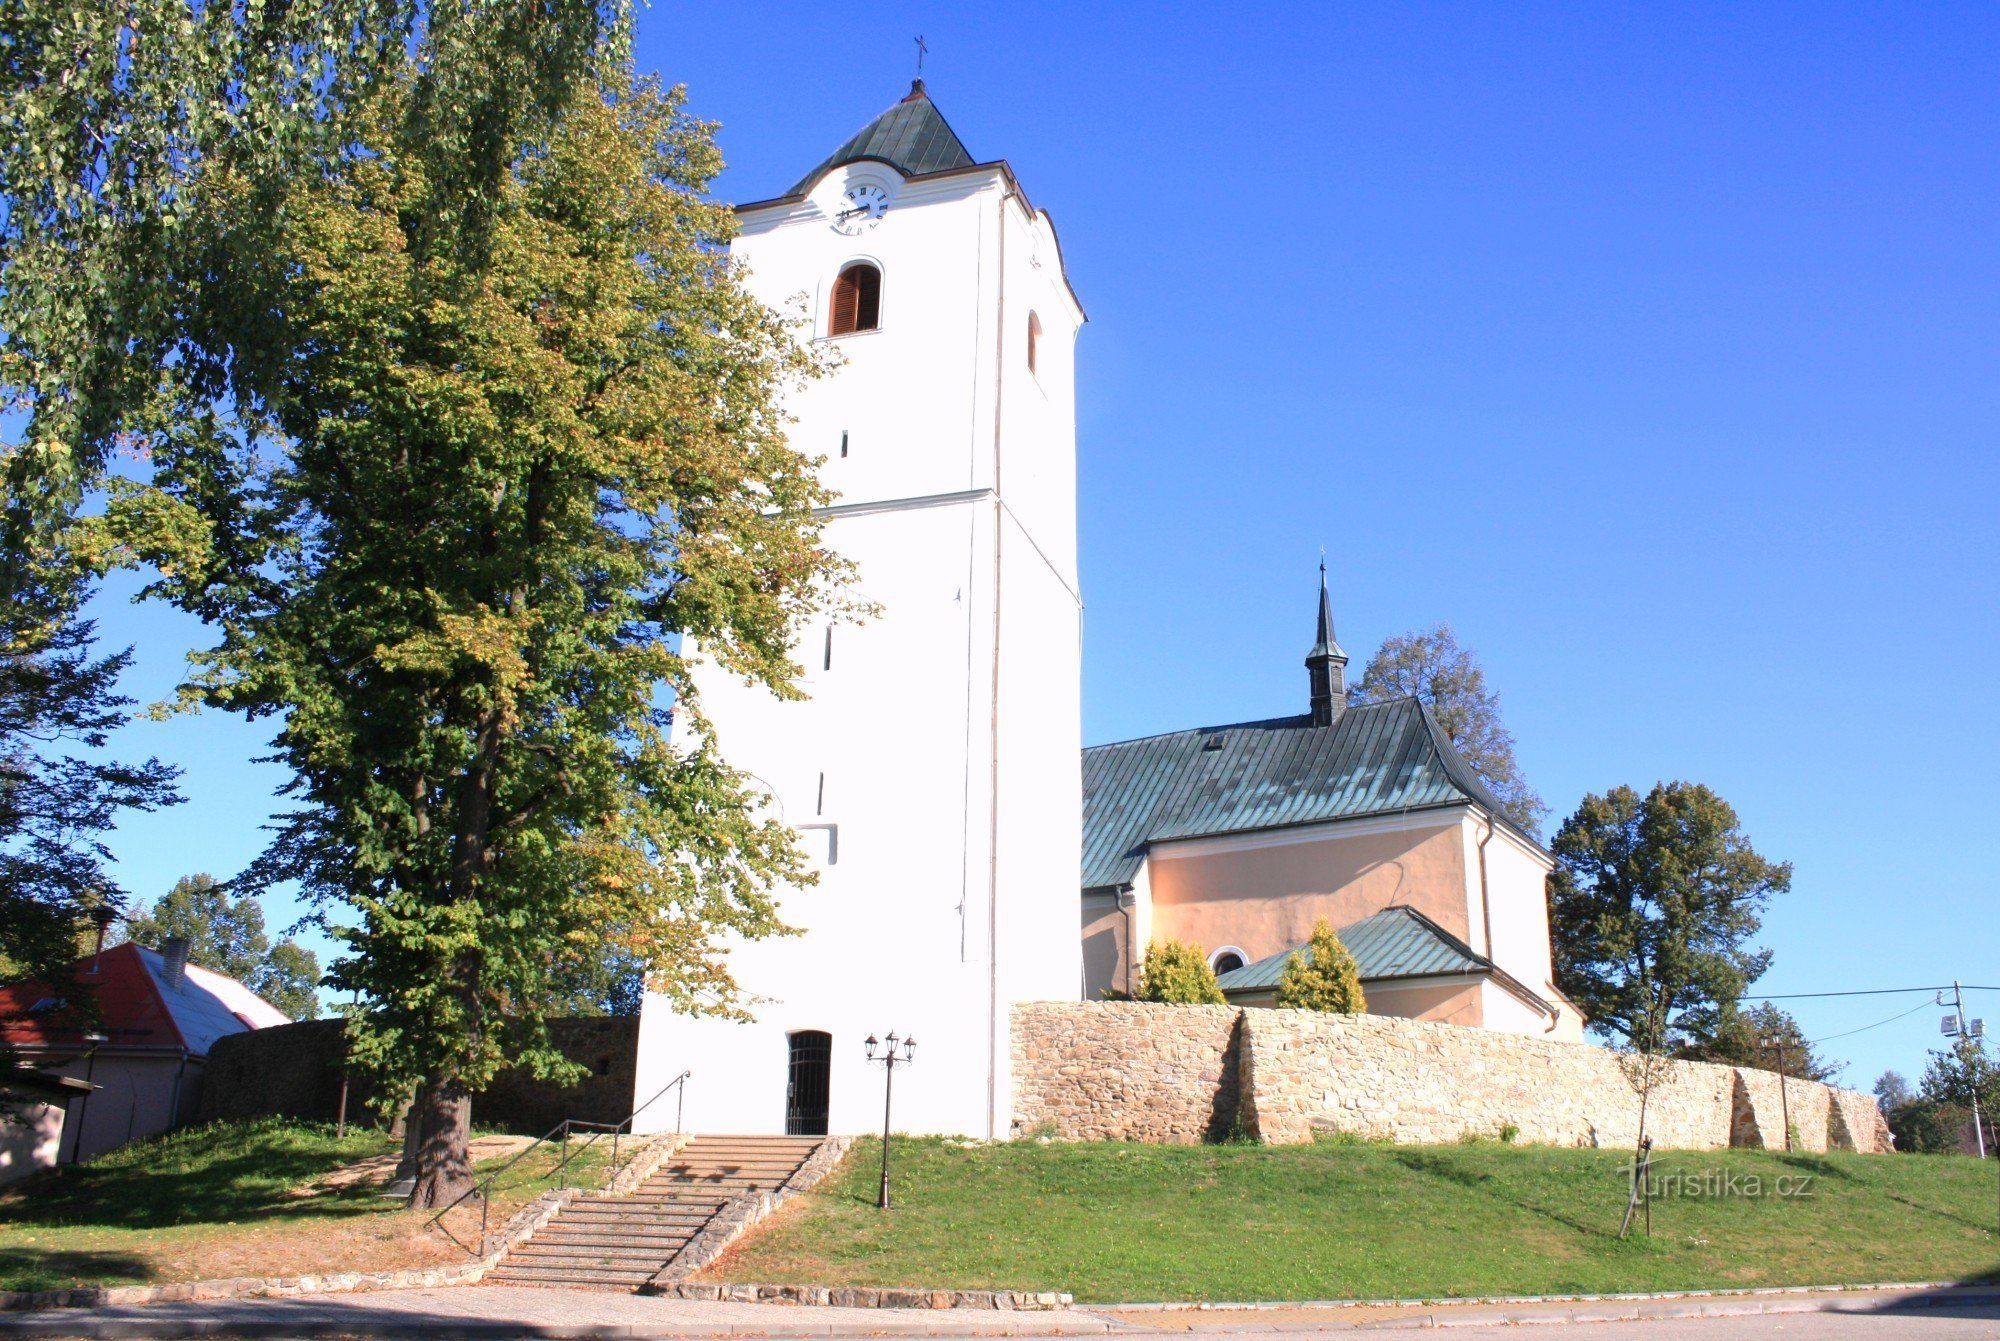 Osová Bítýška - kirken St. Jakob den større